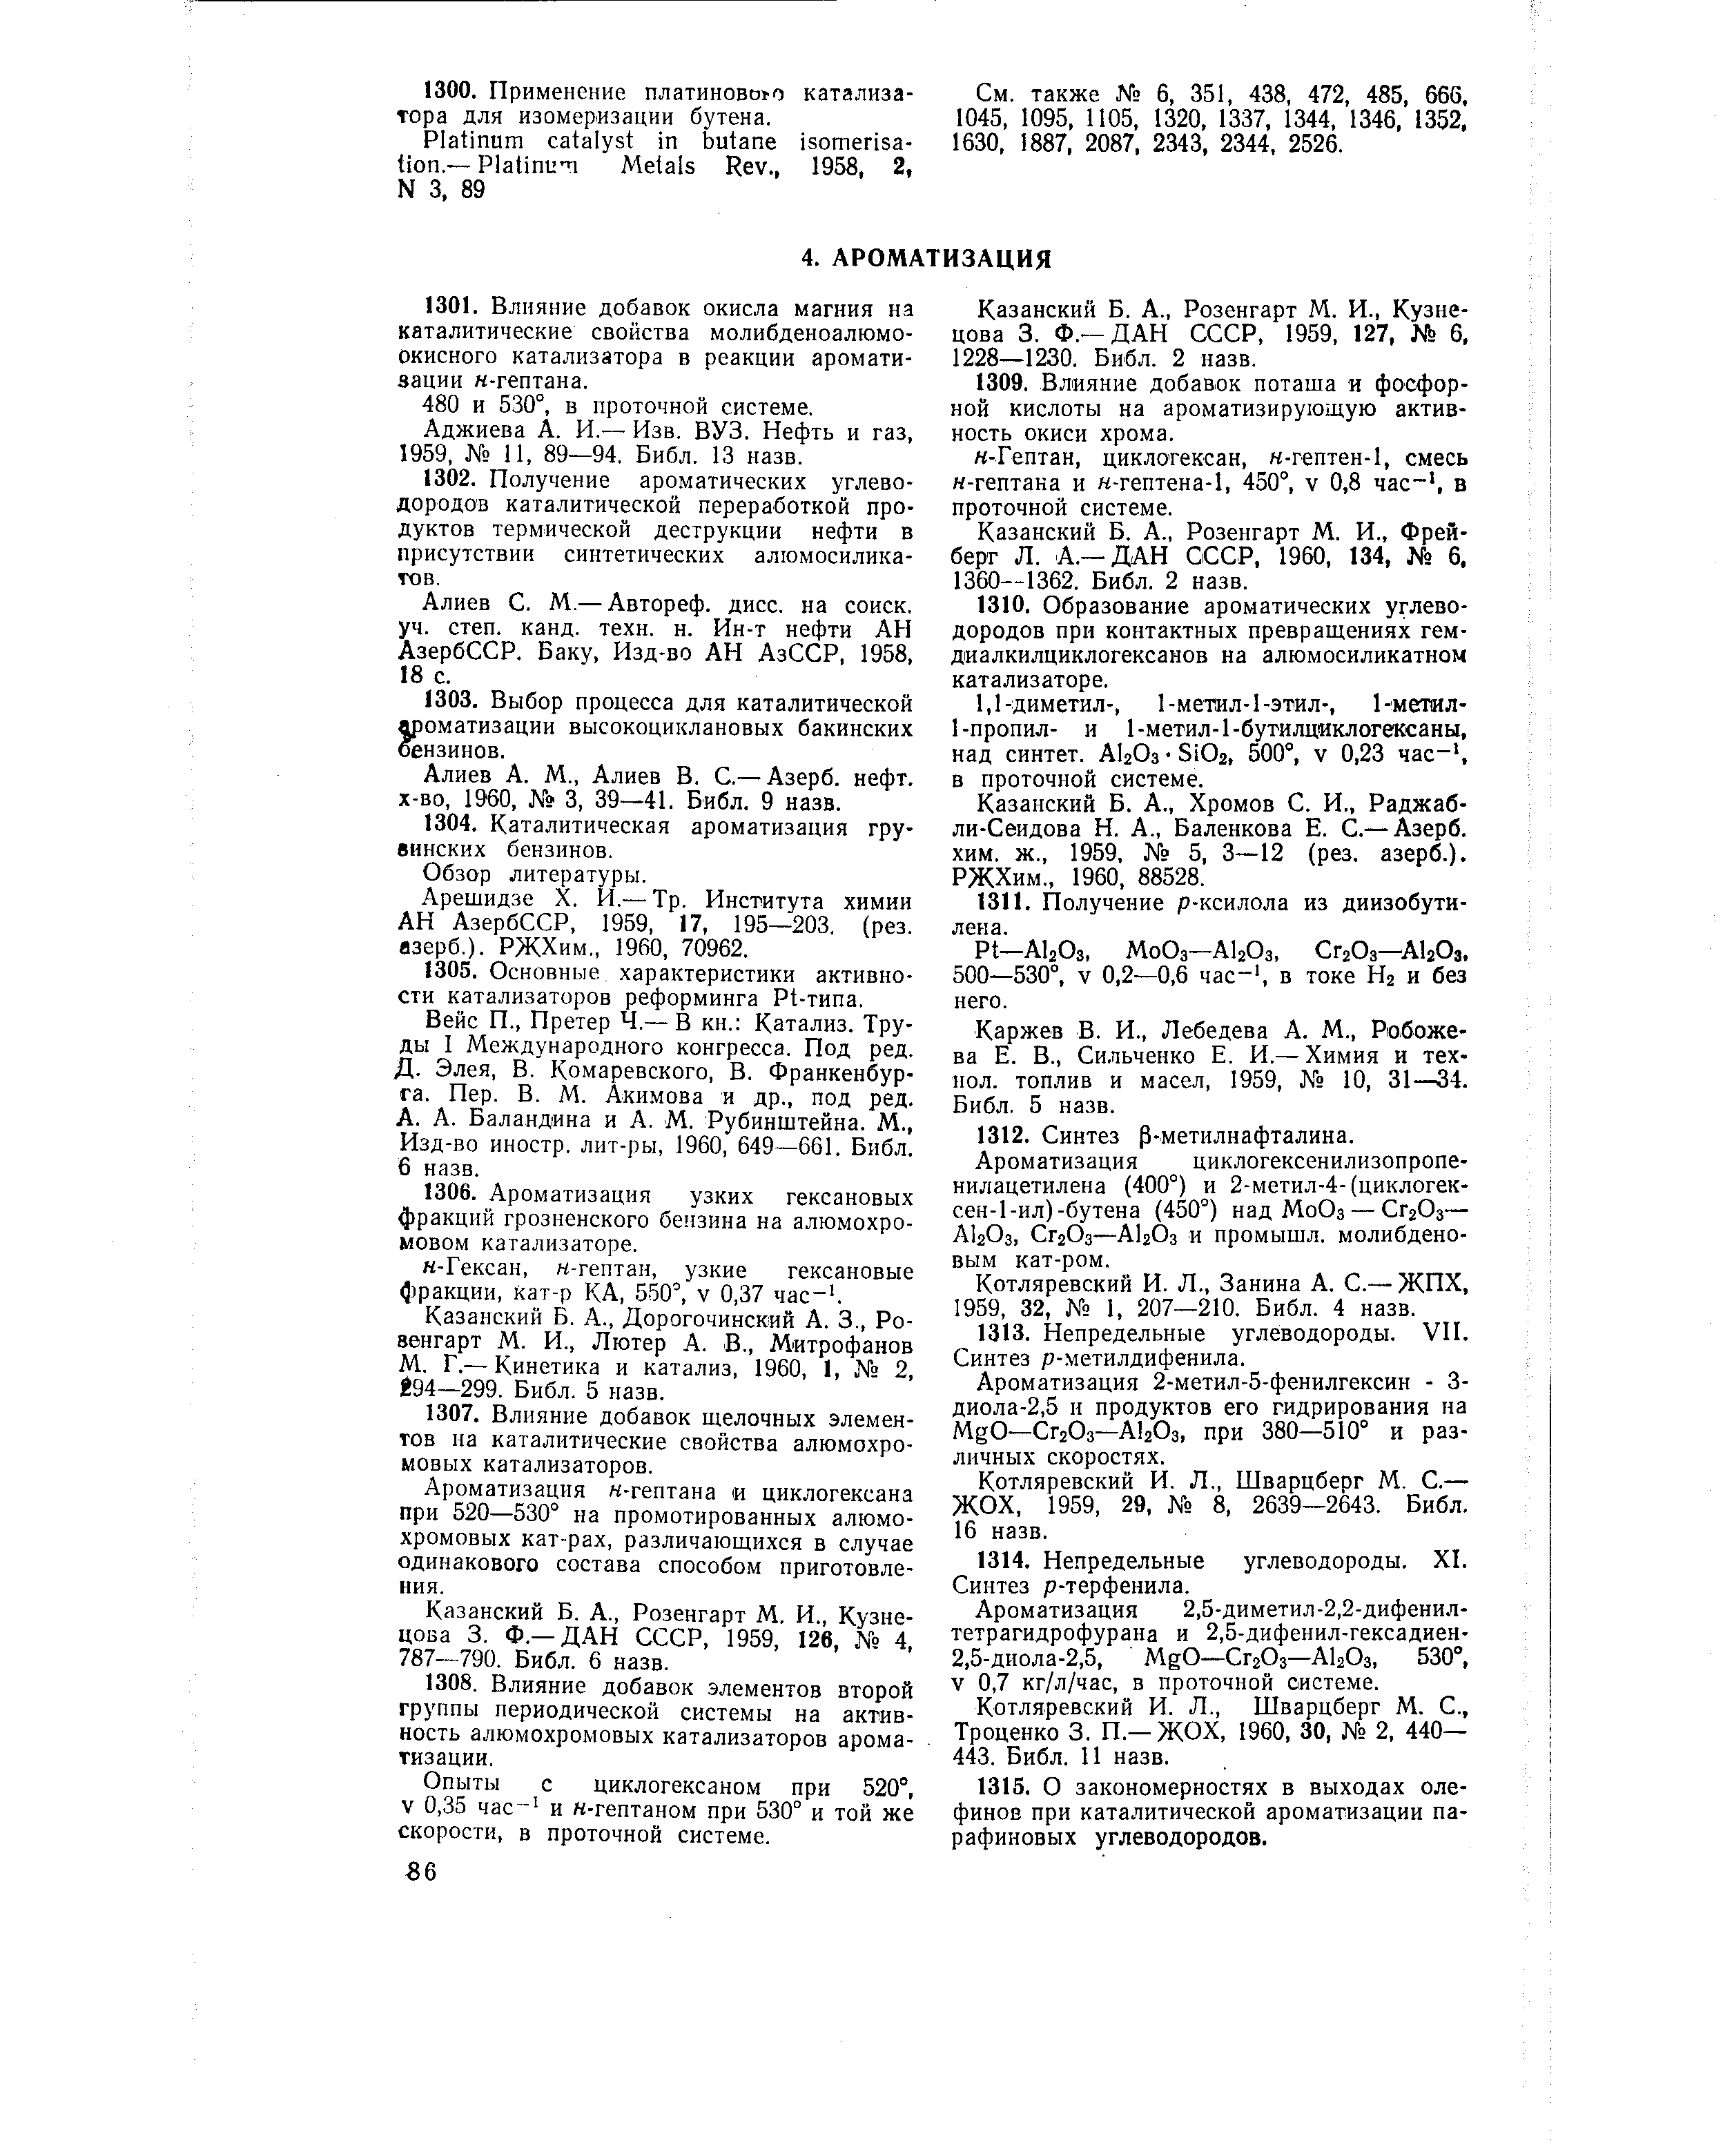 Алиев А. М., Алиев В. С.— Азерб. нефт. х-во, 1960, 3, 39—41. Библ. 9 назв.